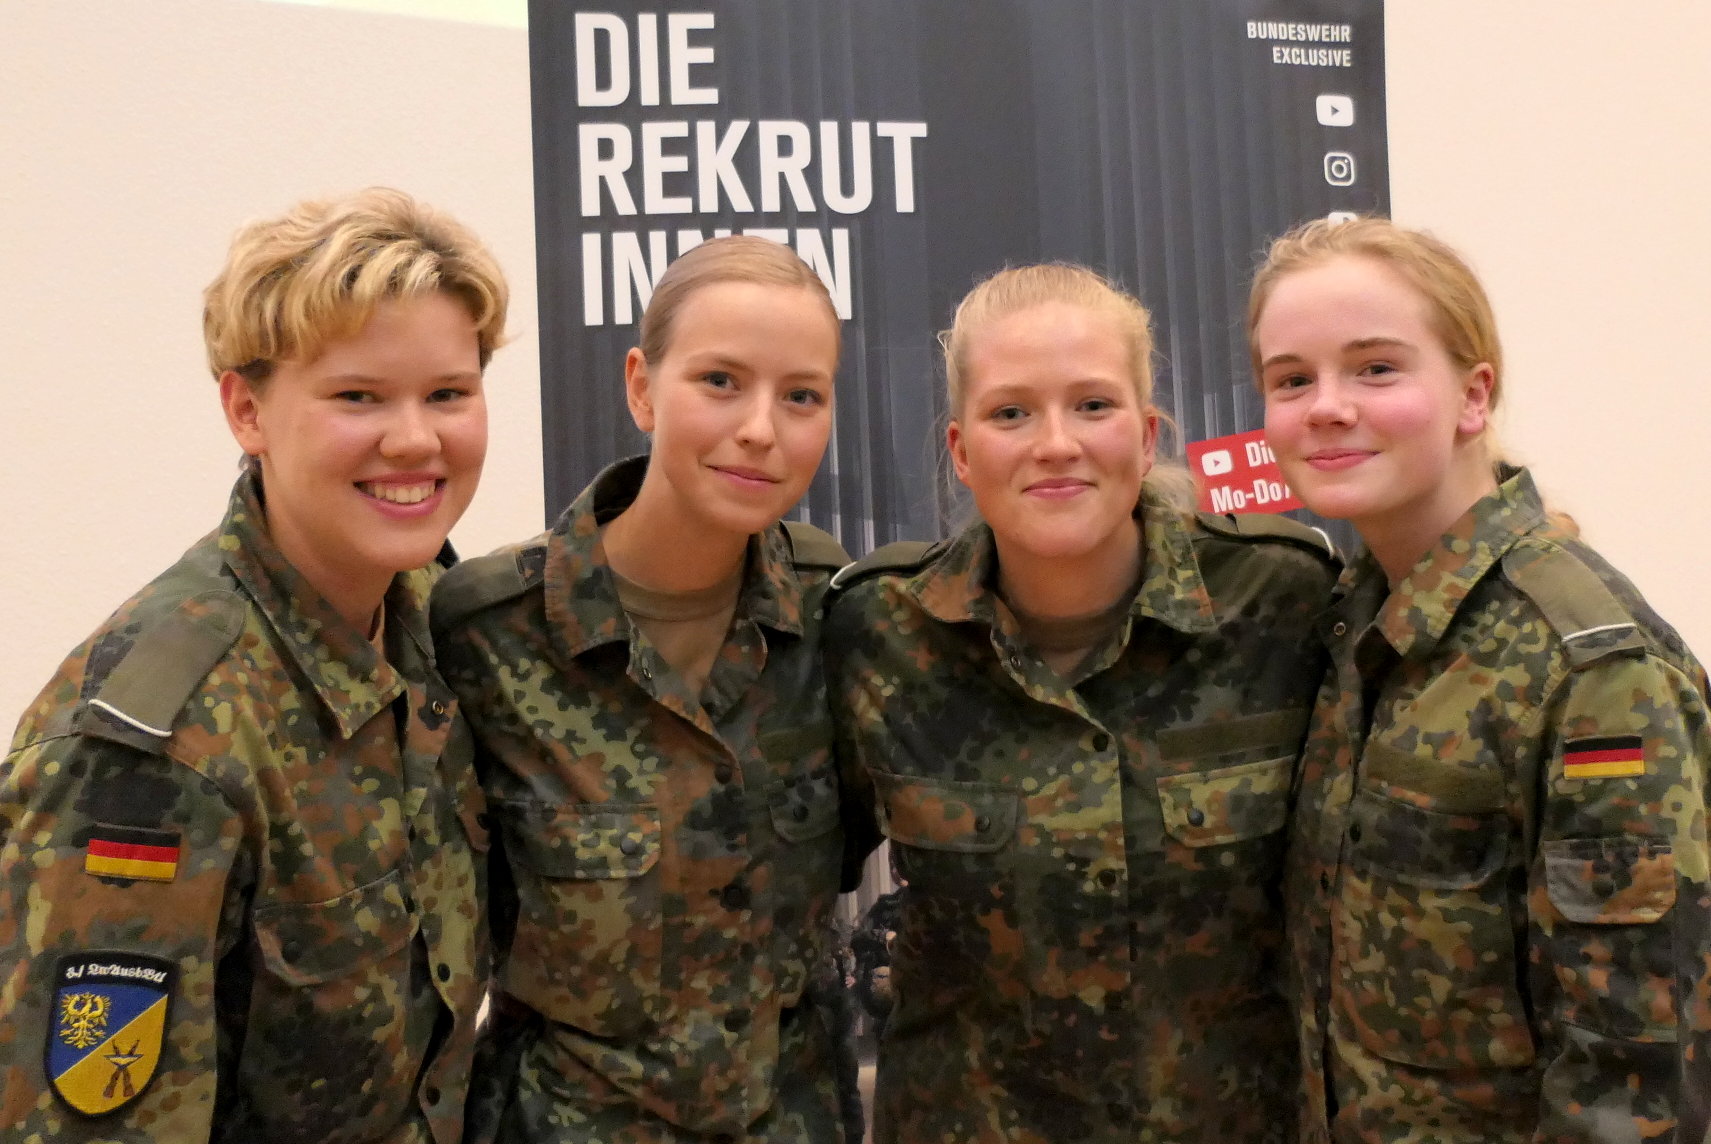 DIE REKRUTINNEN auf Bundeswehr Exclusive - Vier der Protagonistinnen der ne...